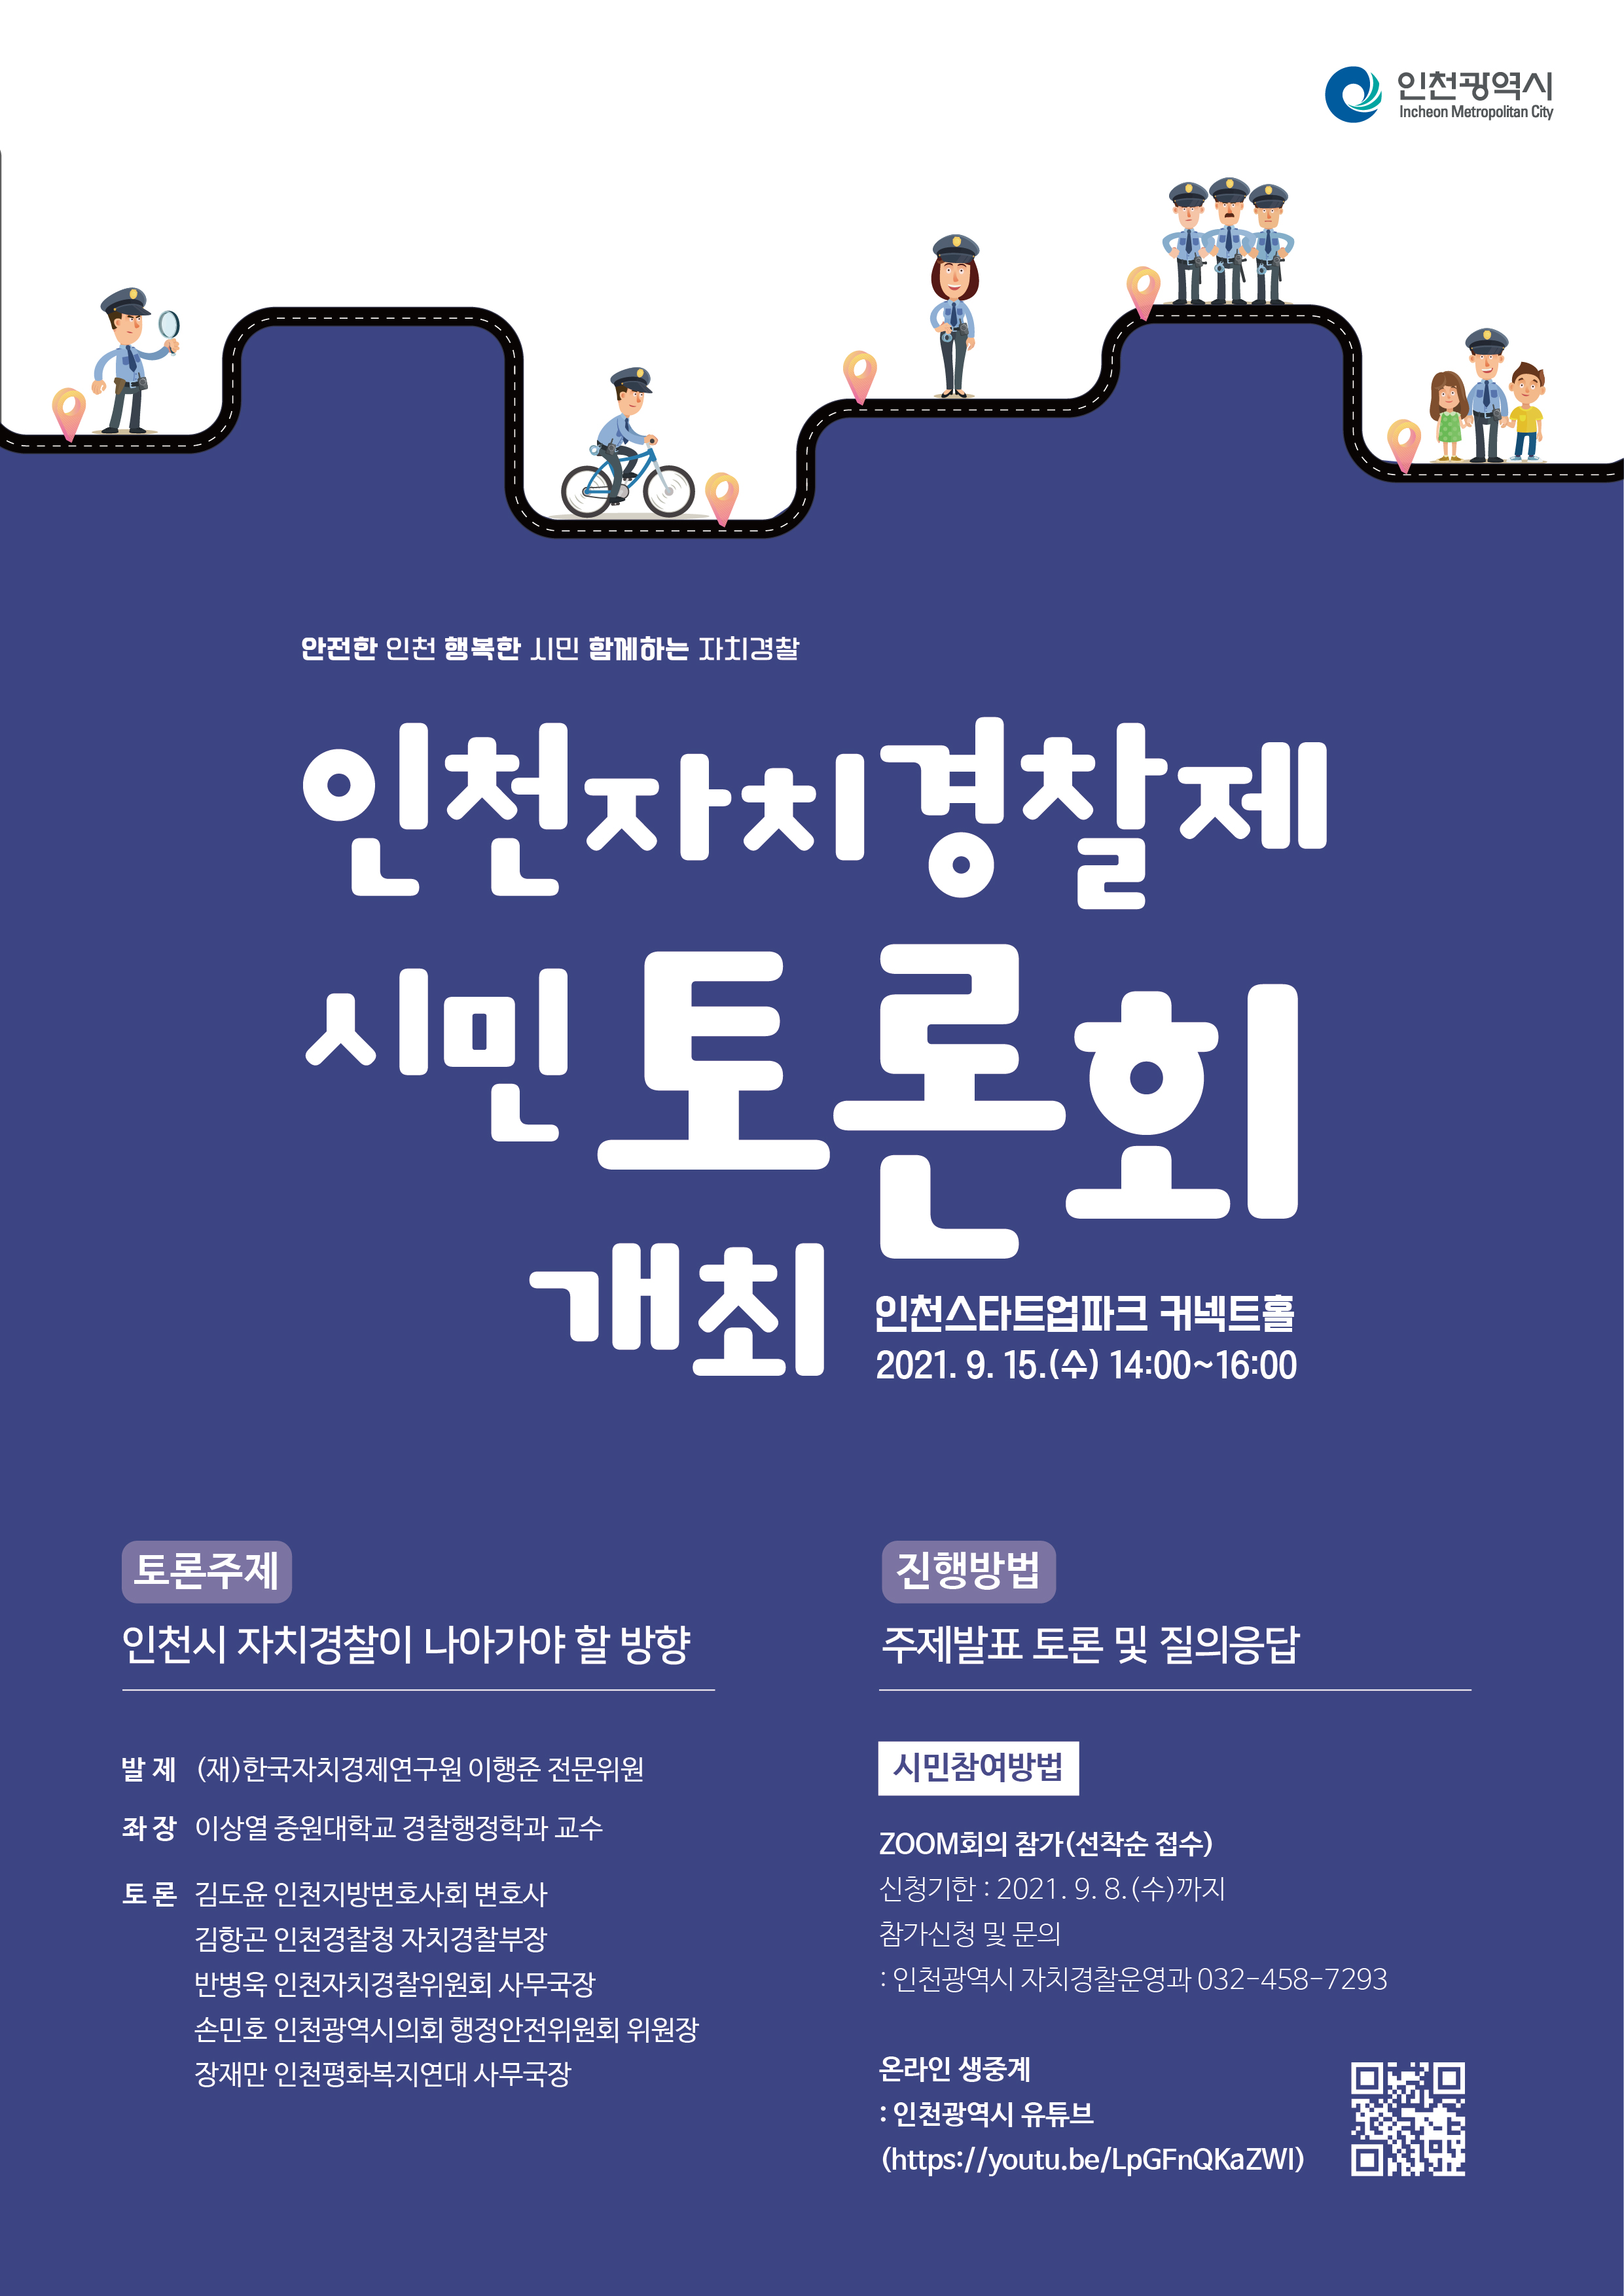 인천자치경찰제 시민토론회 개최